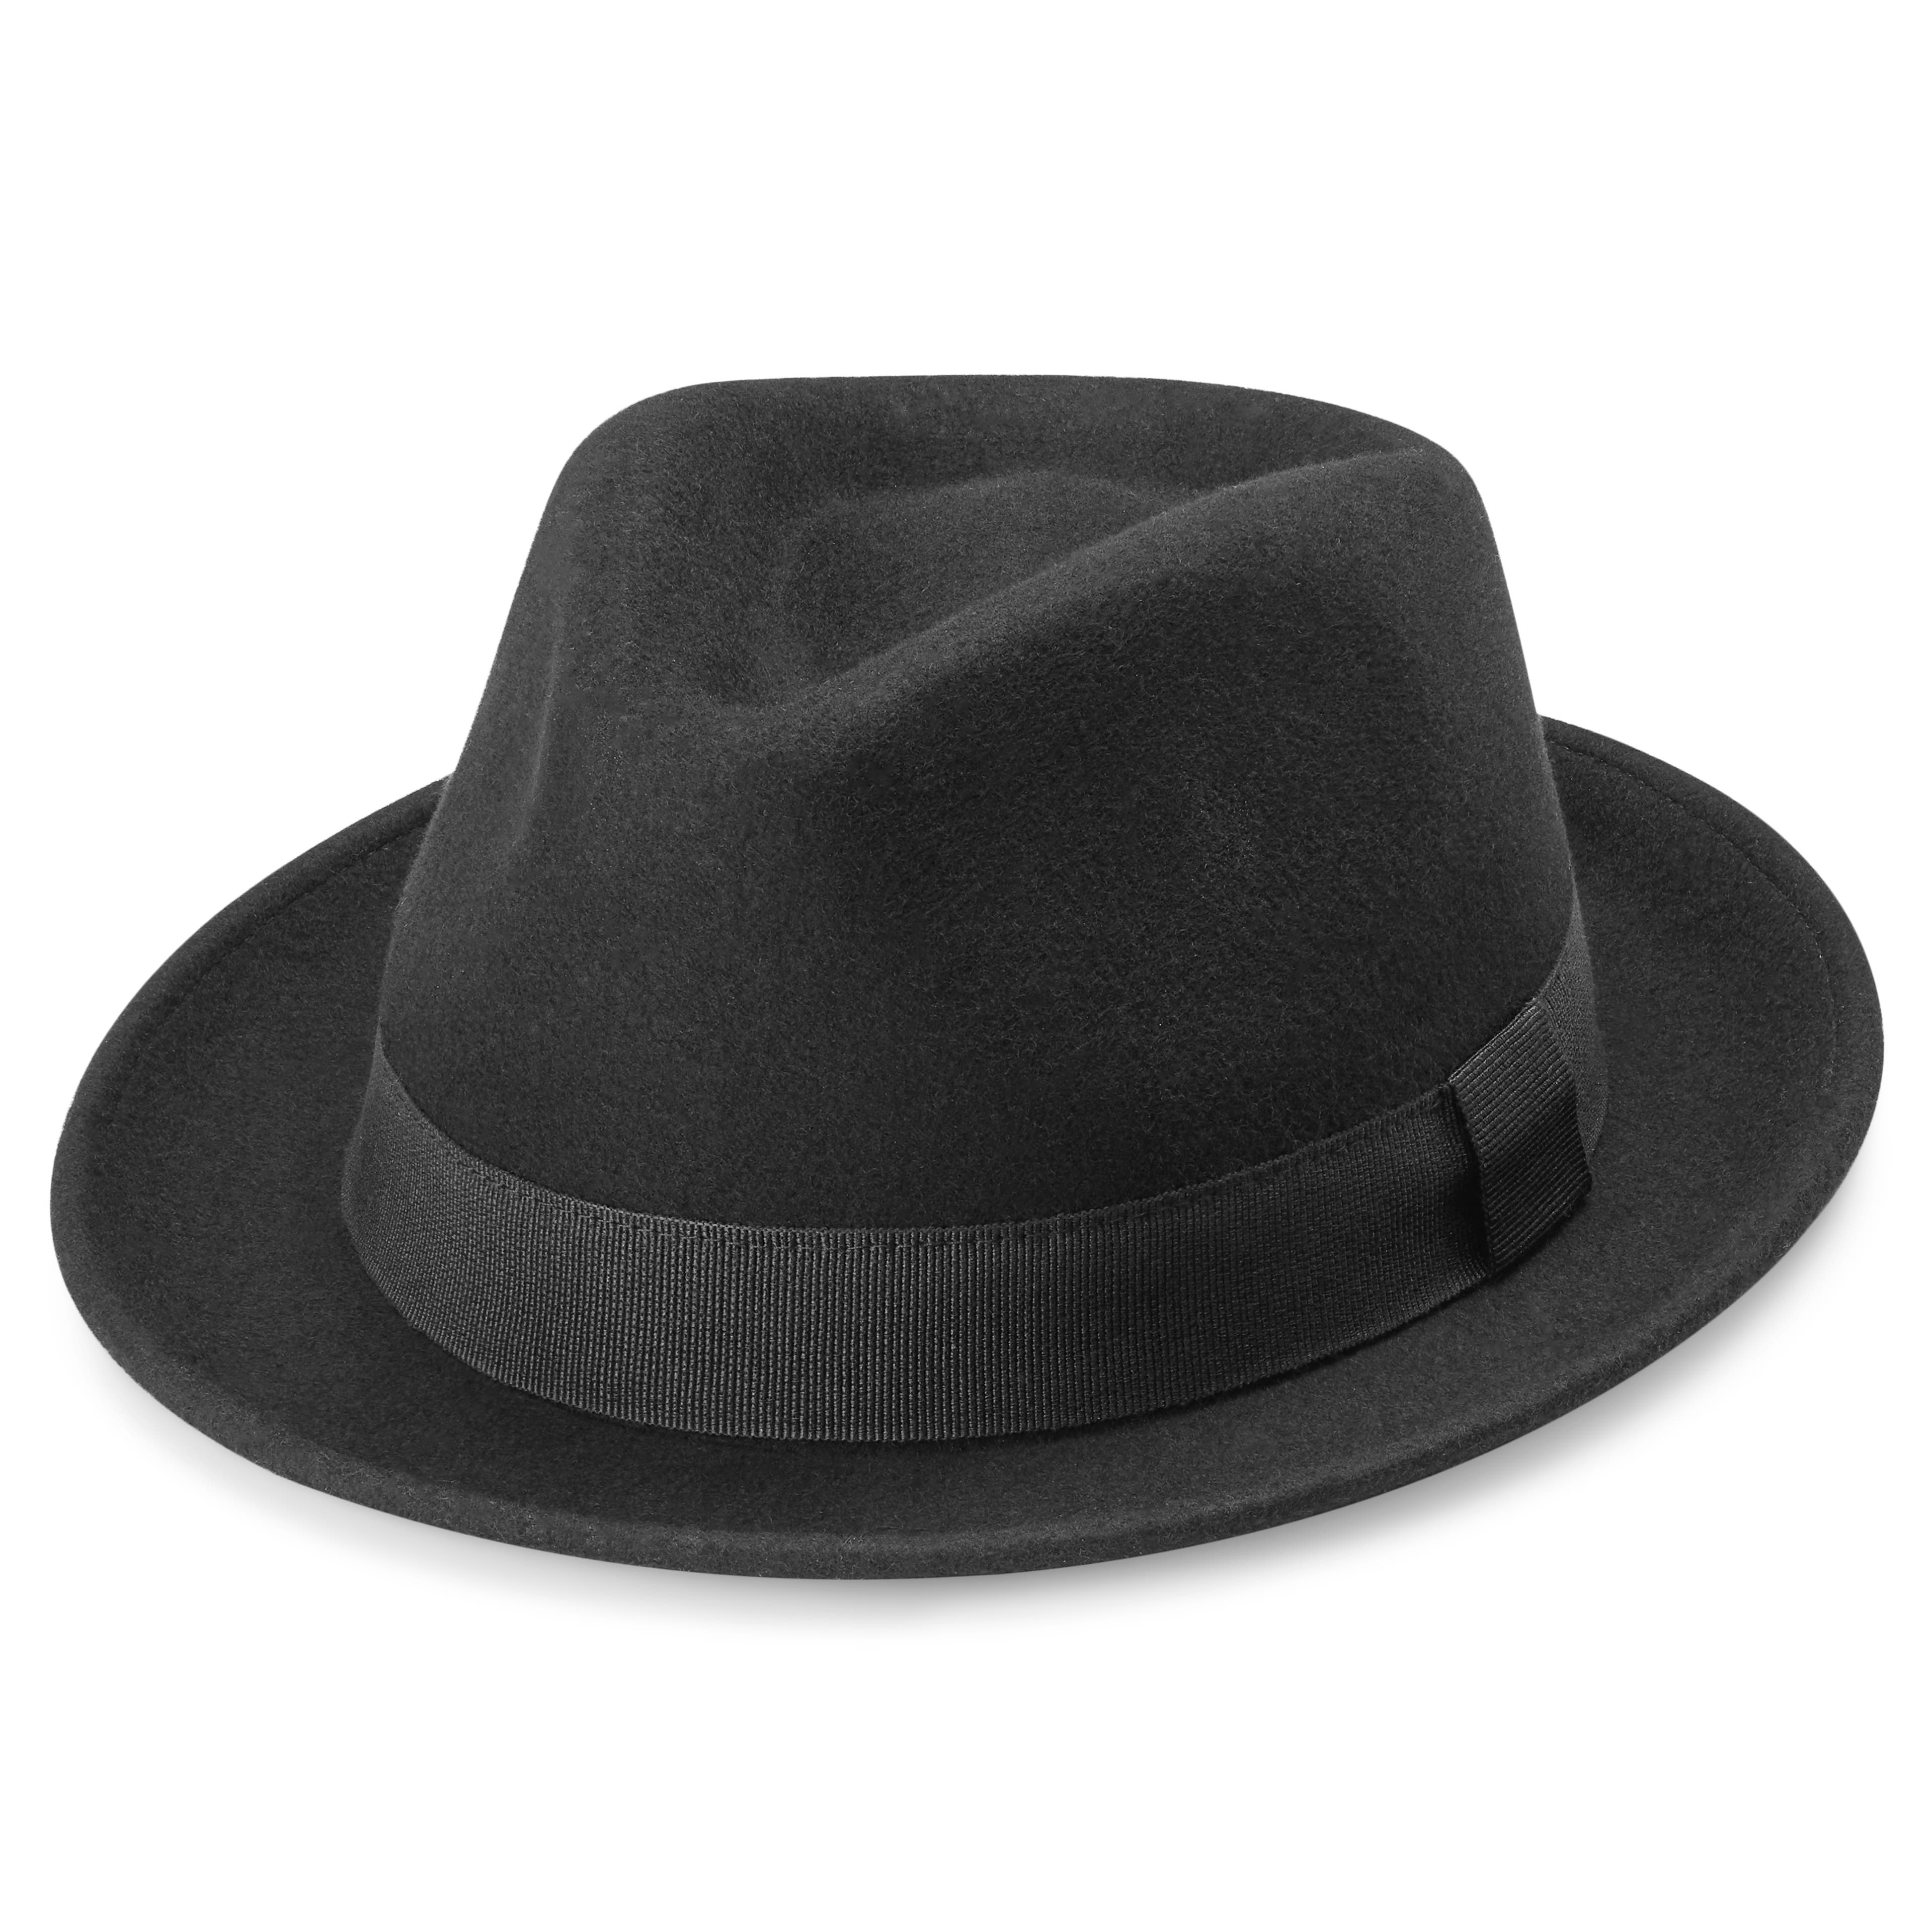 Tomasso čierny klobúk Moda v štýle trilby